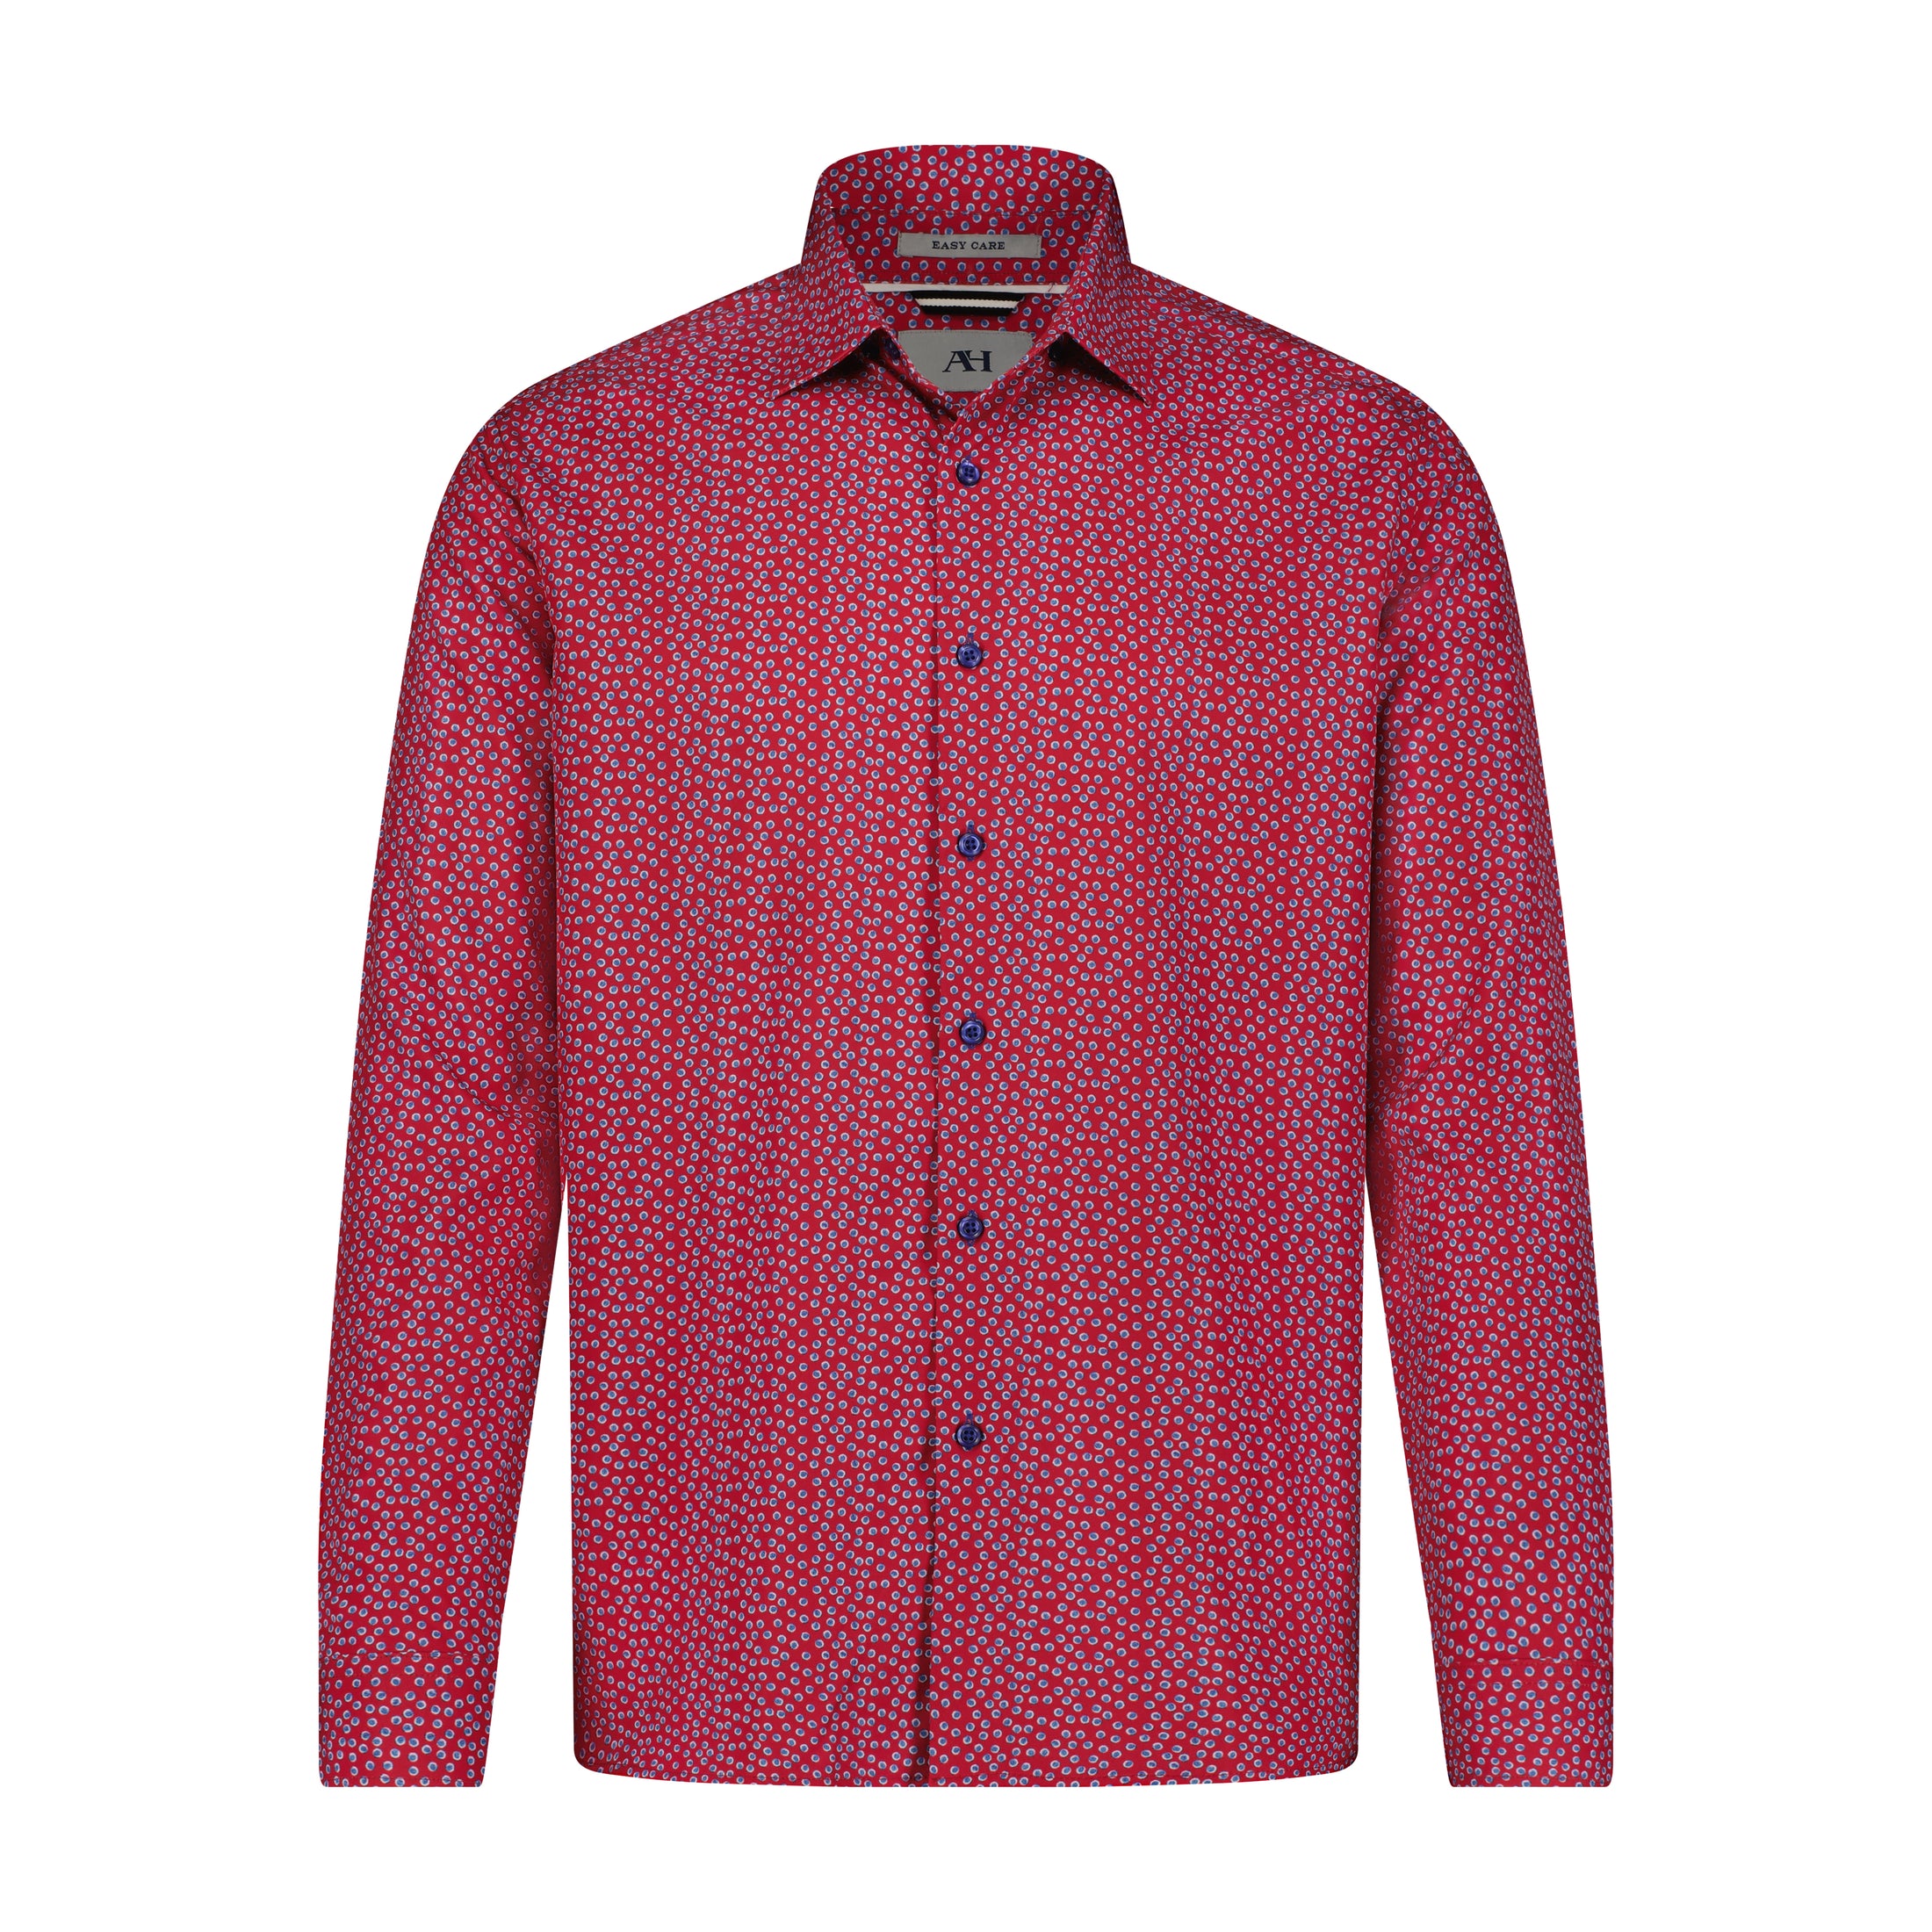 Red with Indigo Dot Print Hidden Button Down Long Sleeve Shirt